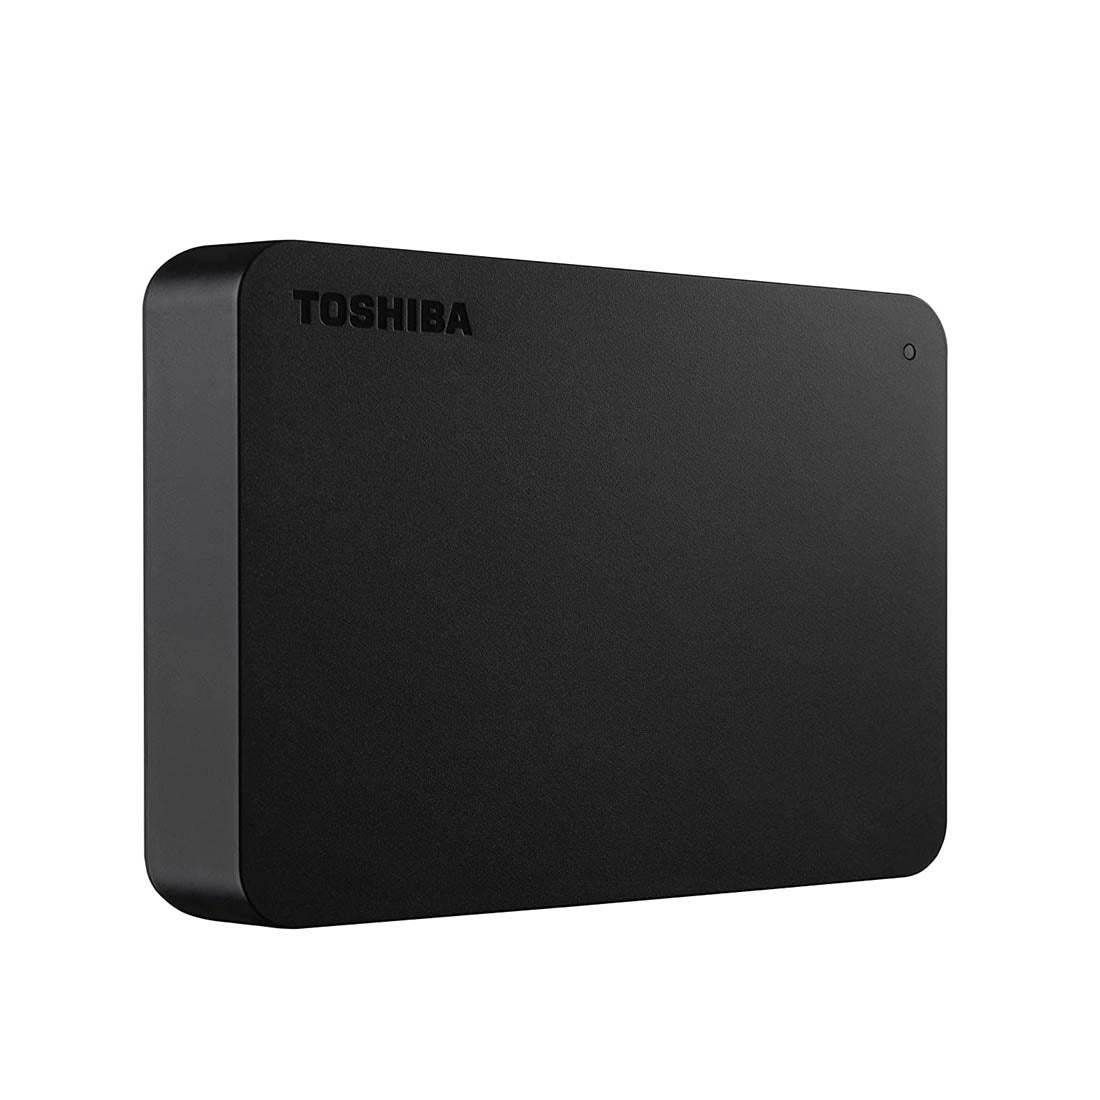 Toshiba Canvio Basics पोर्टेबल 4TB एक्सटर्नल हार्ड ड्राइव सुपरस्पीड USB 3.0 के साथ